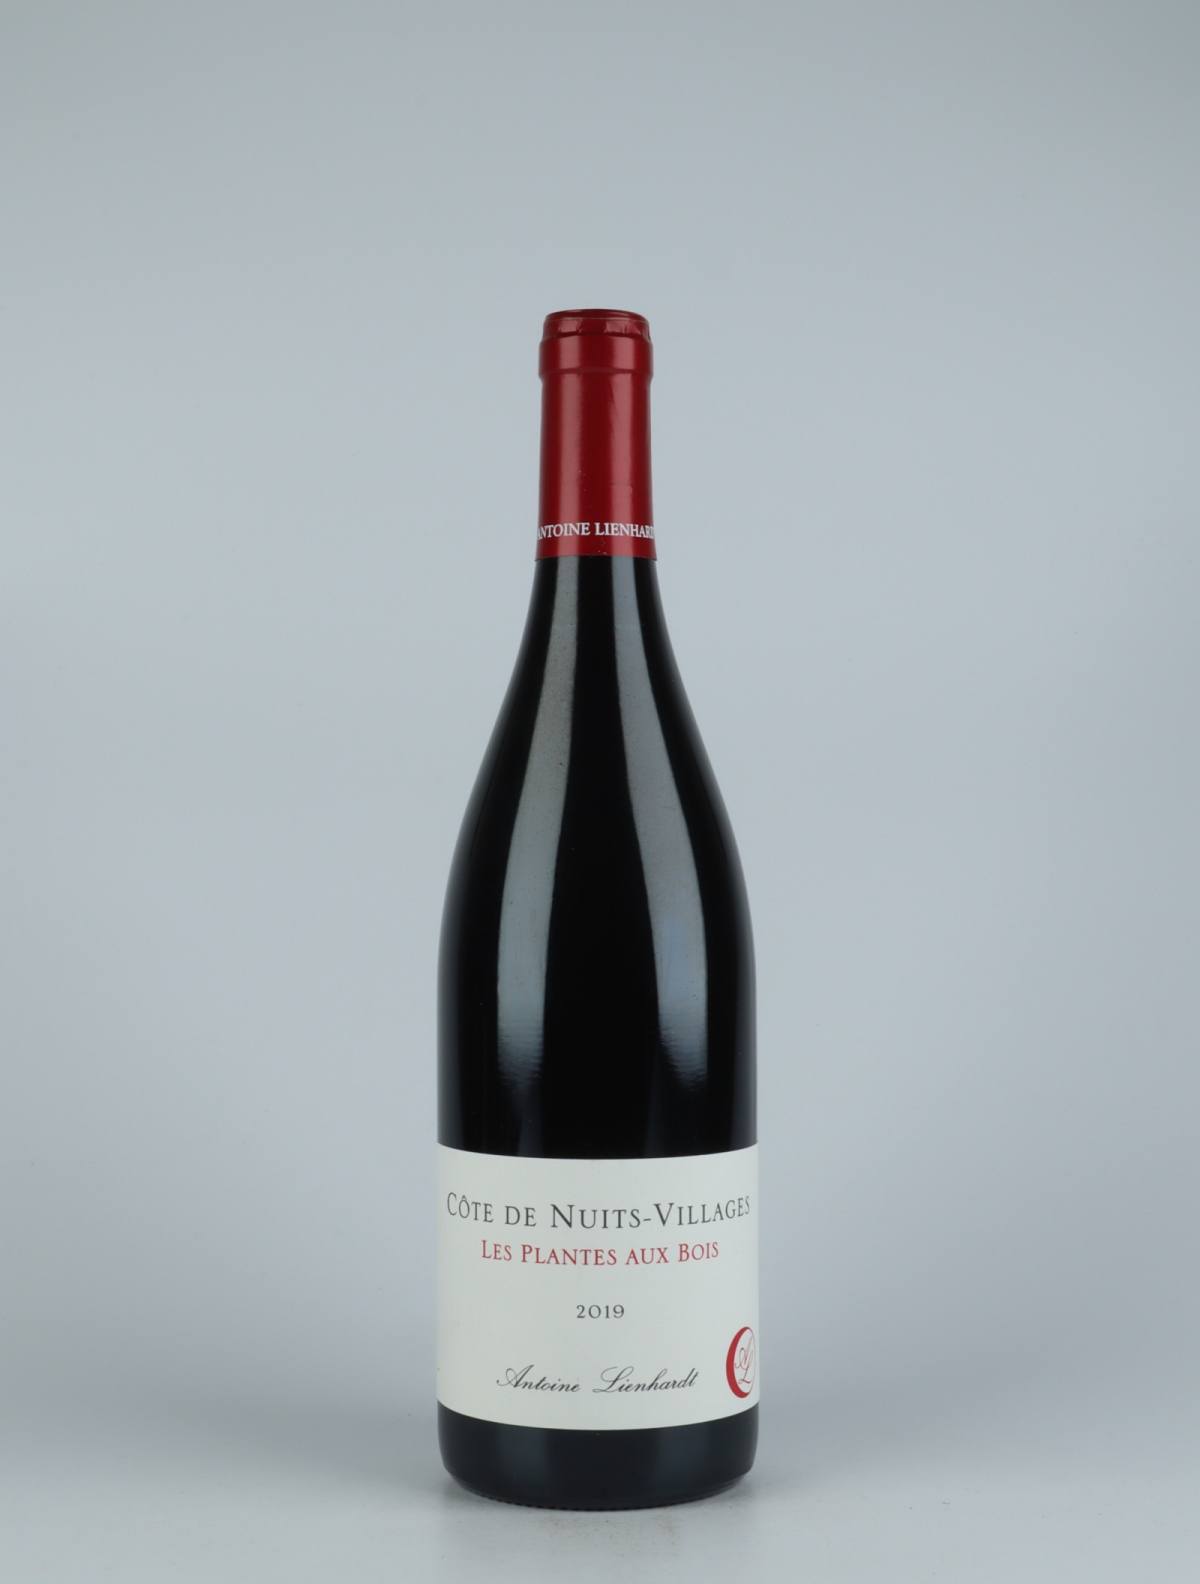 A bottle 2019 Côte de Nuits Villages - Les Plantes aux Bois Red wine from Antoine Lienhardt, Burgundy in France